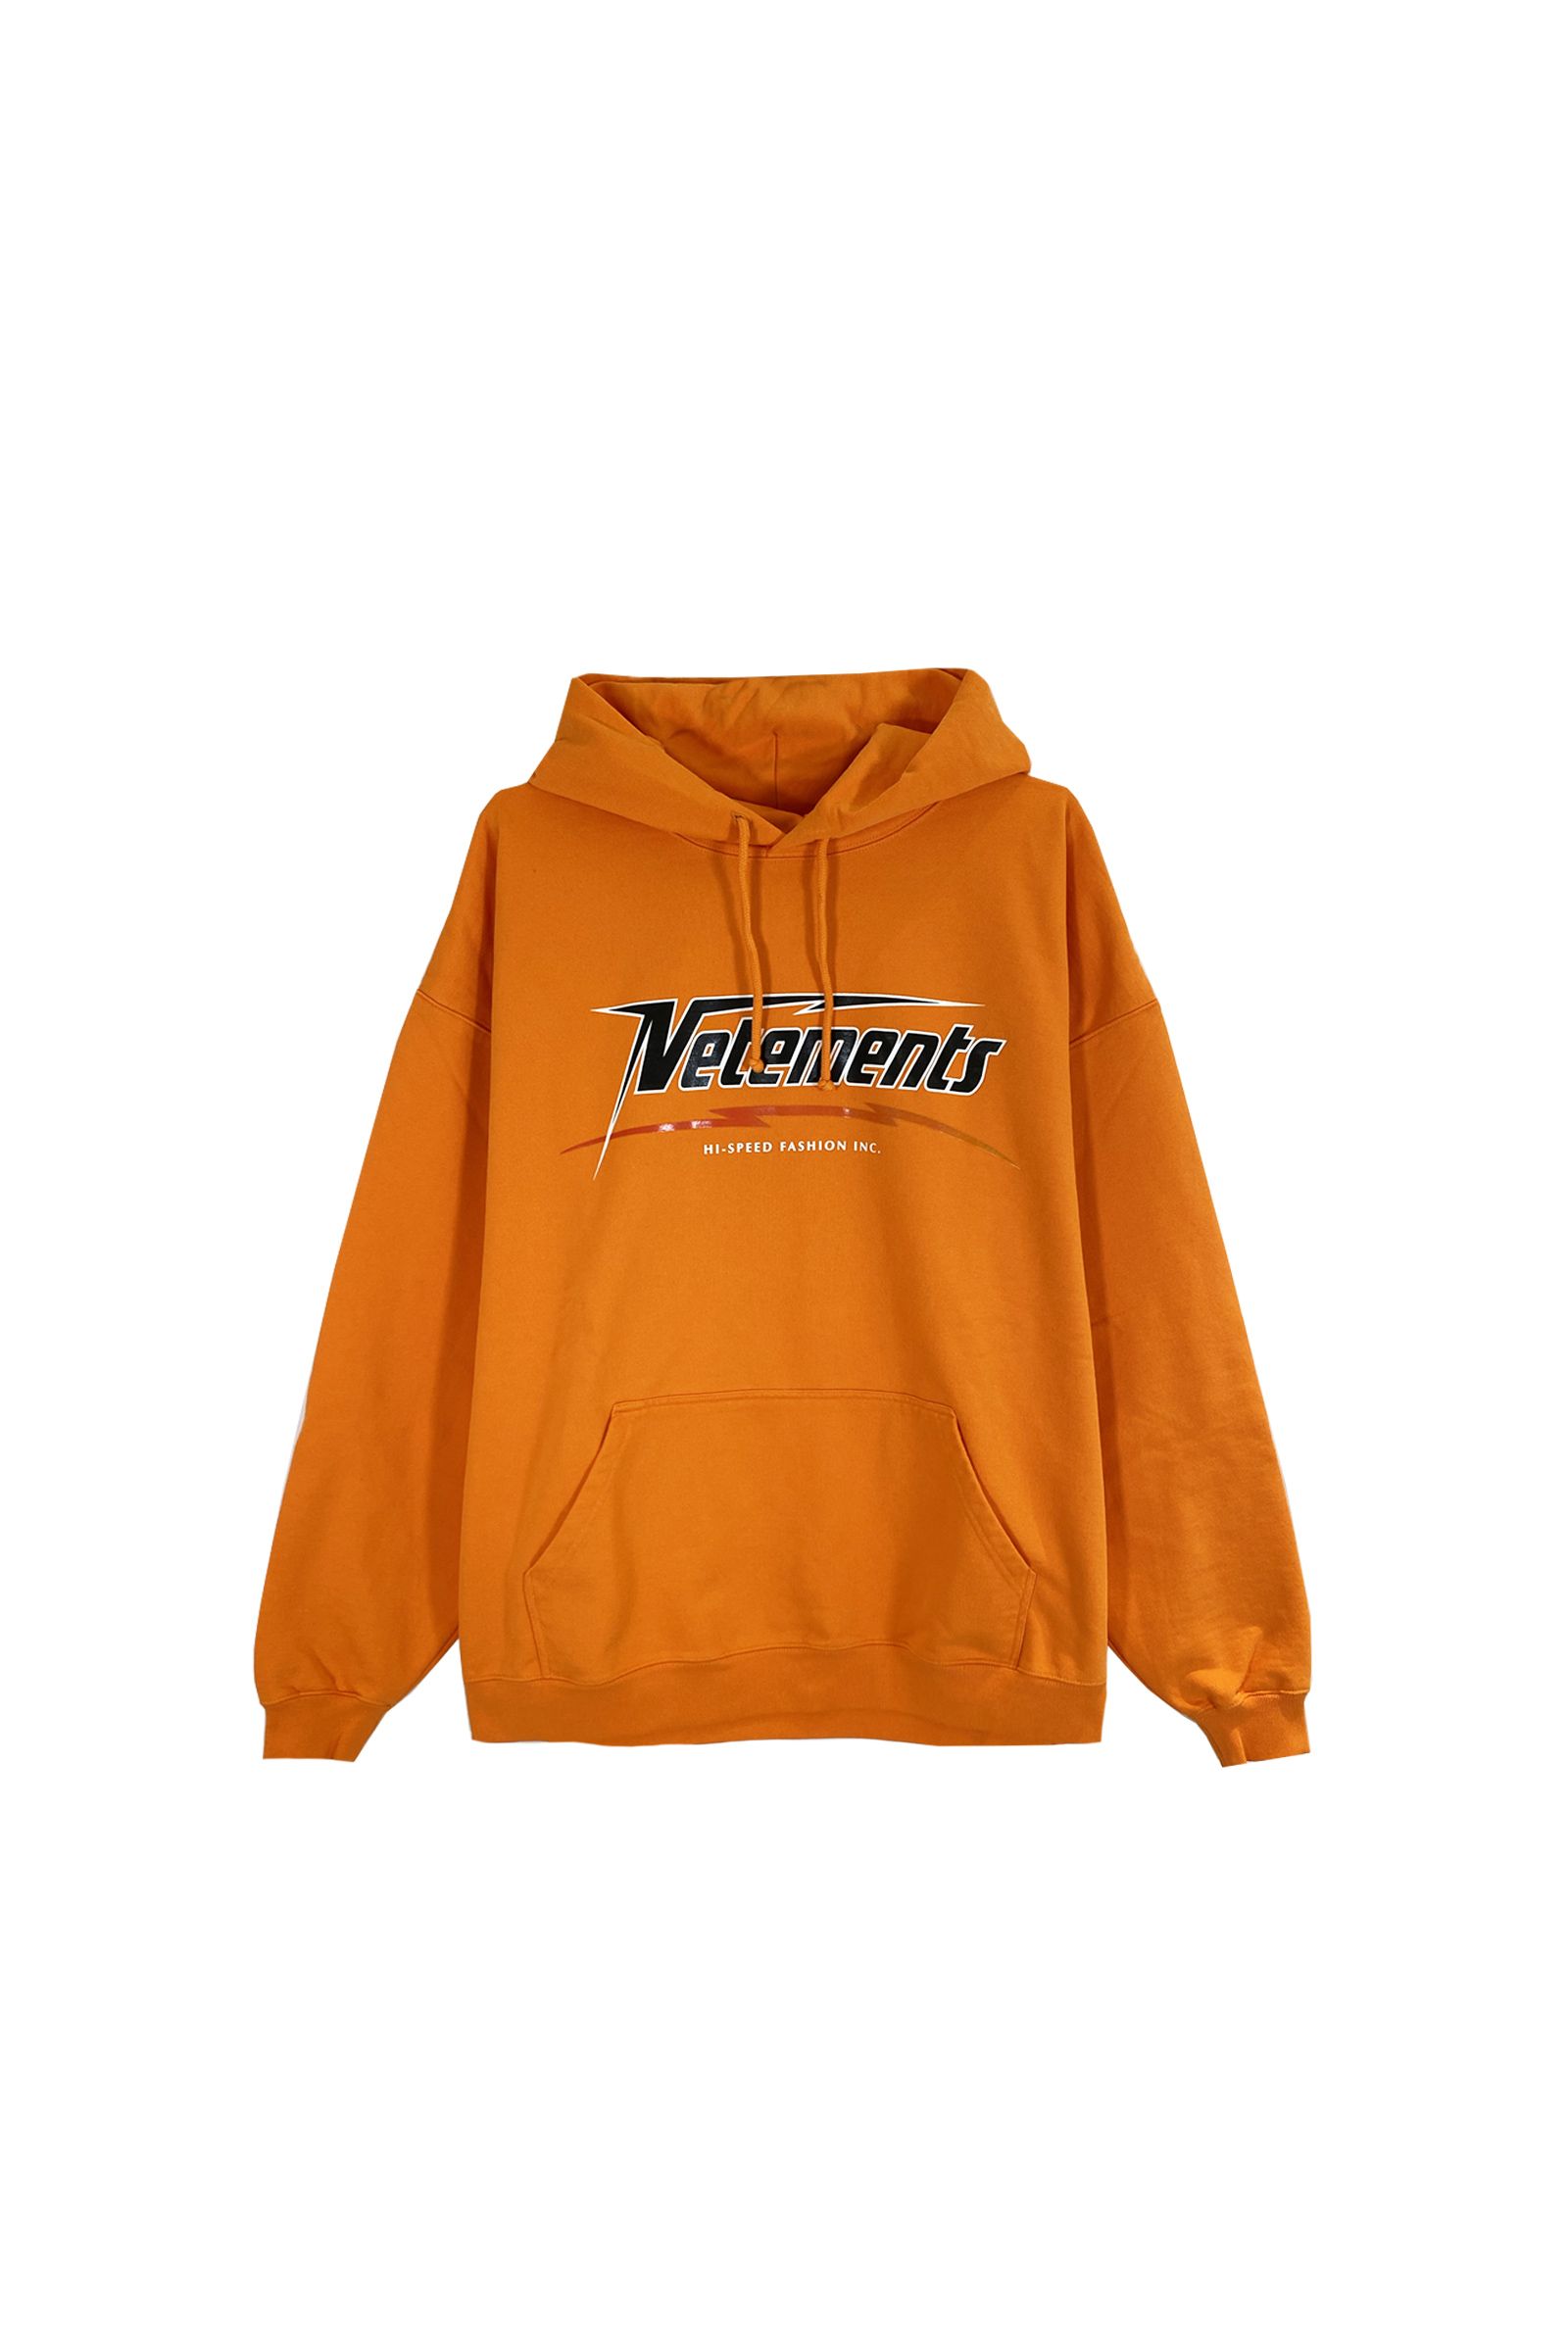 ヴェトモン/Hi-speed hoodie/プルオーバーパーカー/Orange - XS